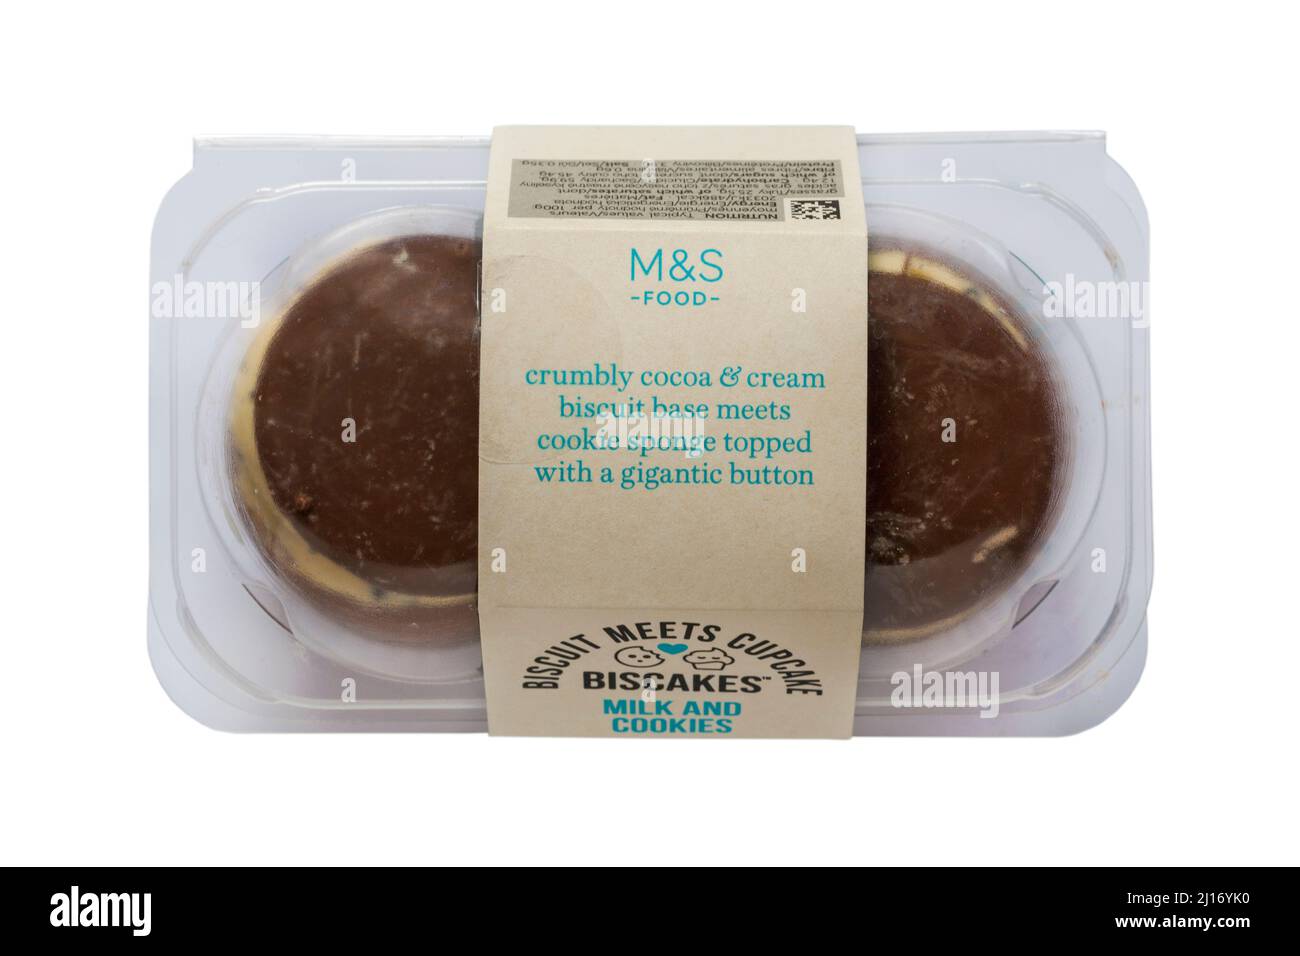 Pack de Biscakes, biscuit et cupcake, lait et biscuits de M&S isolés sur fond blanc Banque D'Images